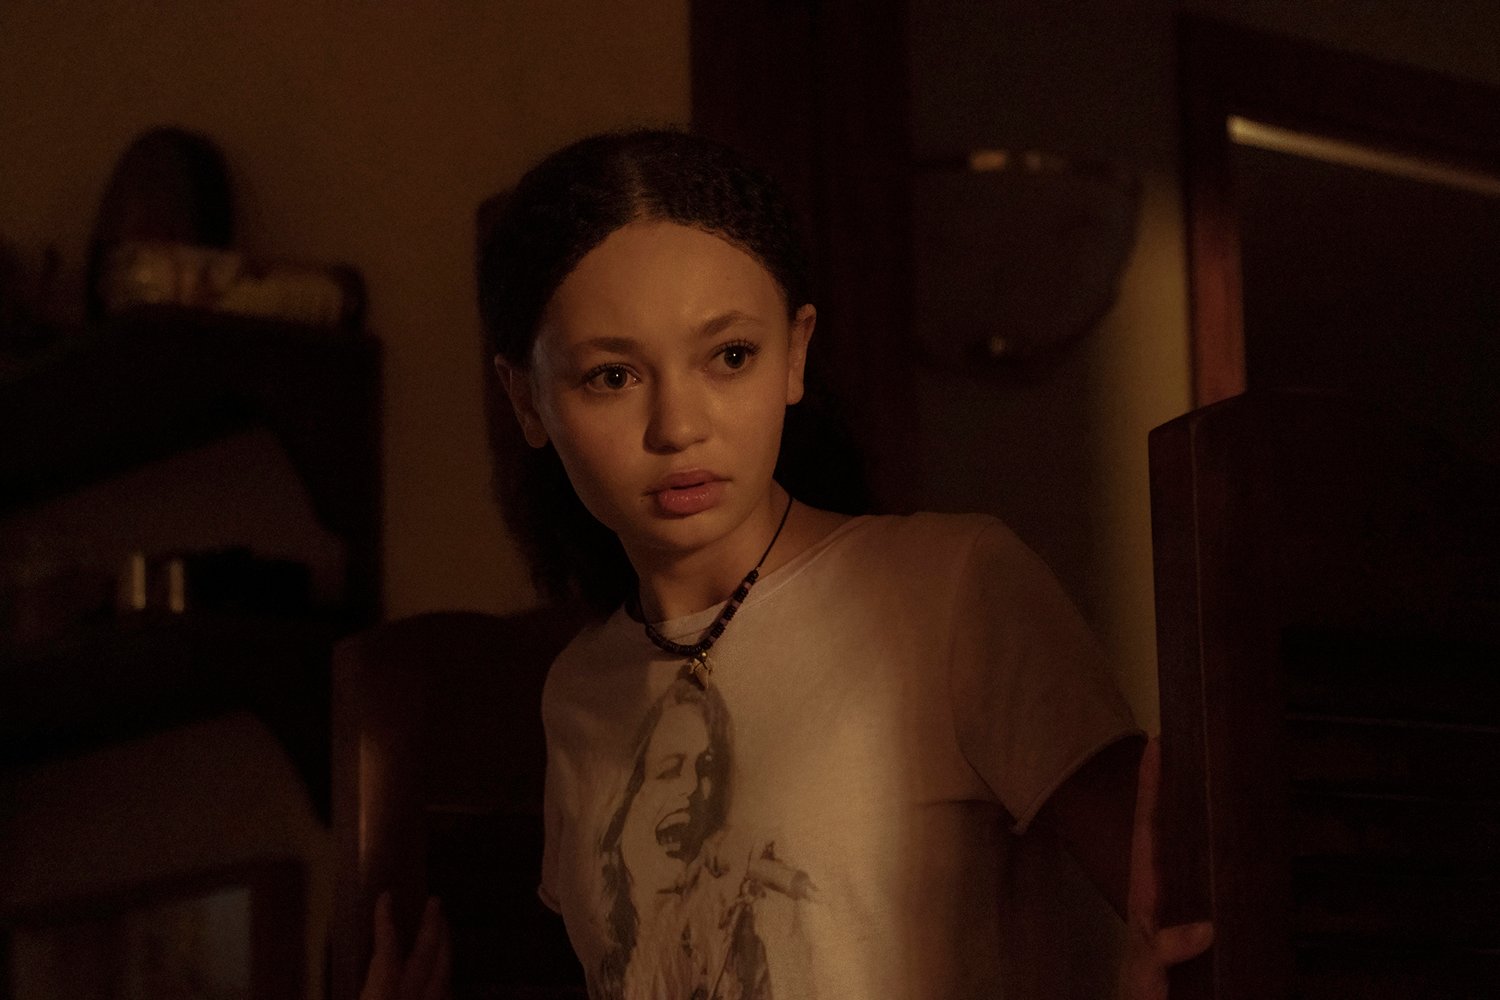 Nico Parker as Sarah looking worried in a dark room in The Last of Us